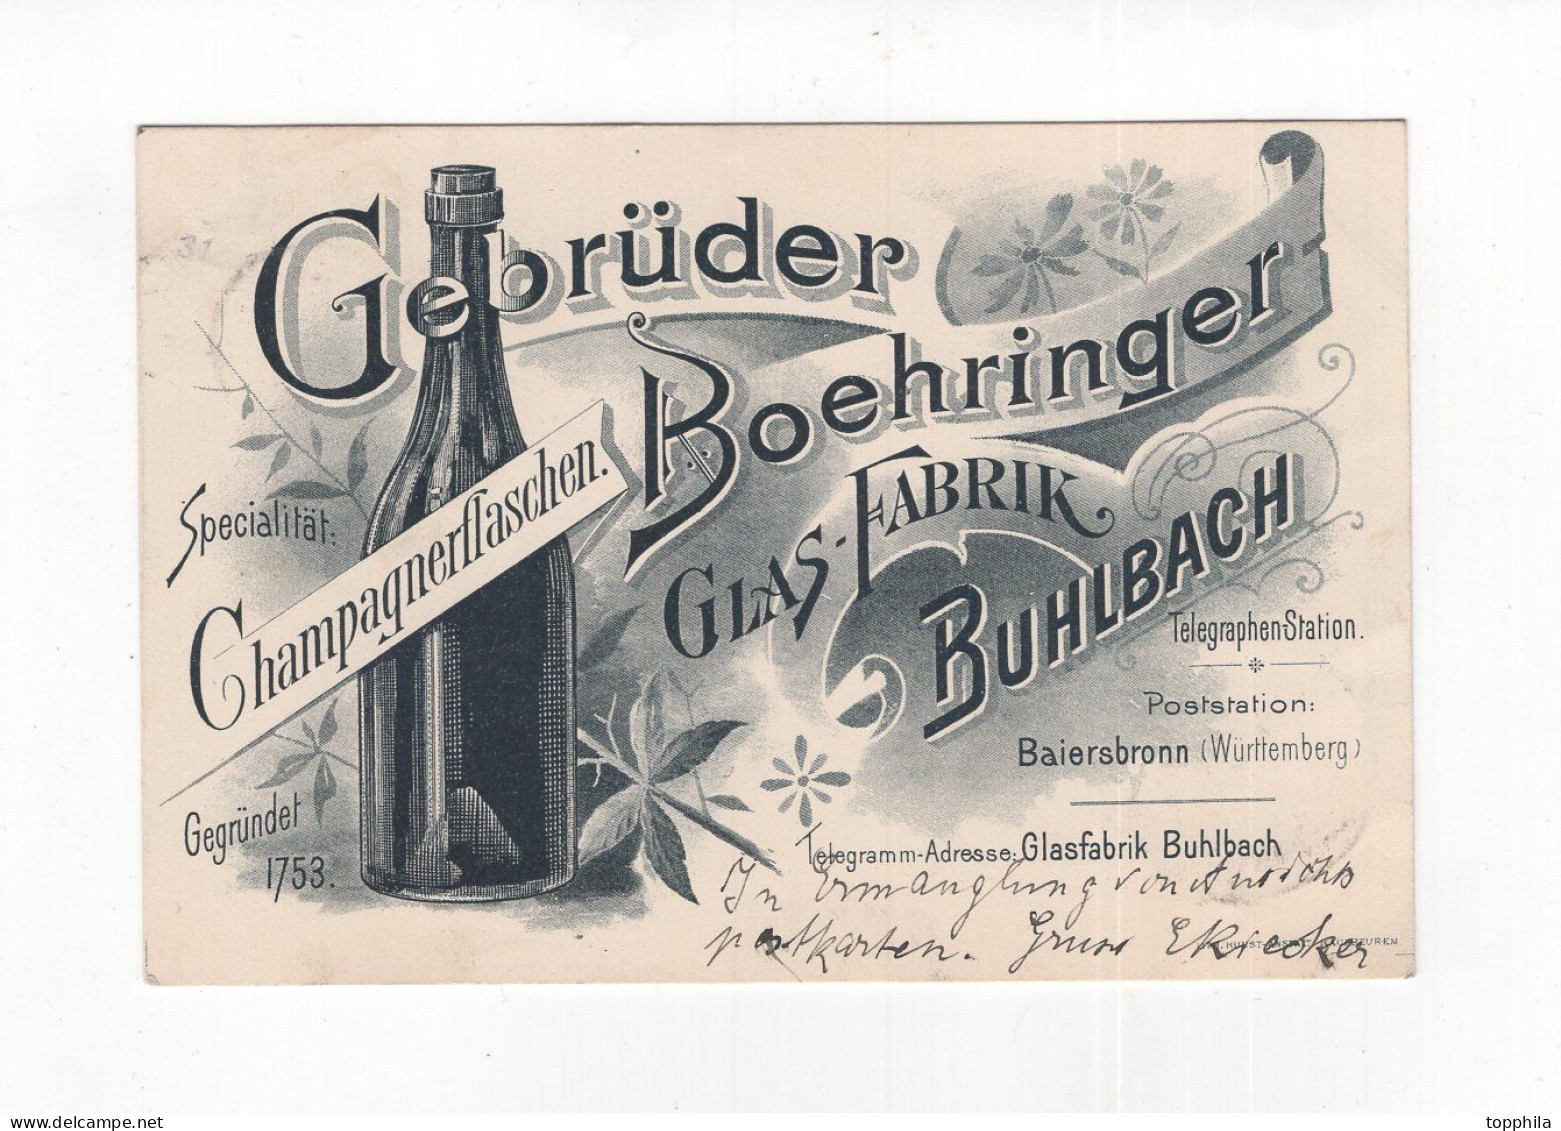 1899 Württemberg Werbepostkarte Champagnerflaschen Gebrüder Boehringer Glasfabrik Buhlbach - Publicité